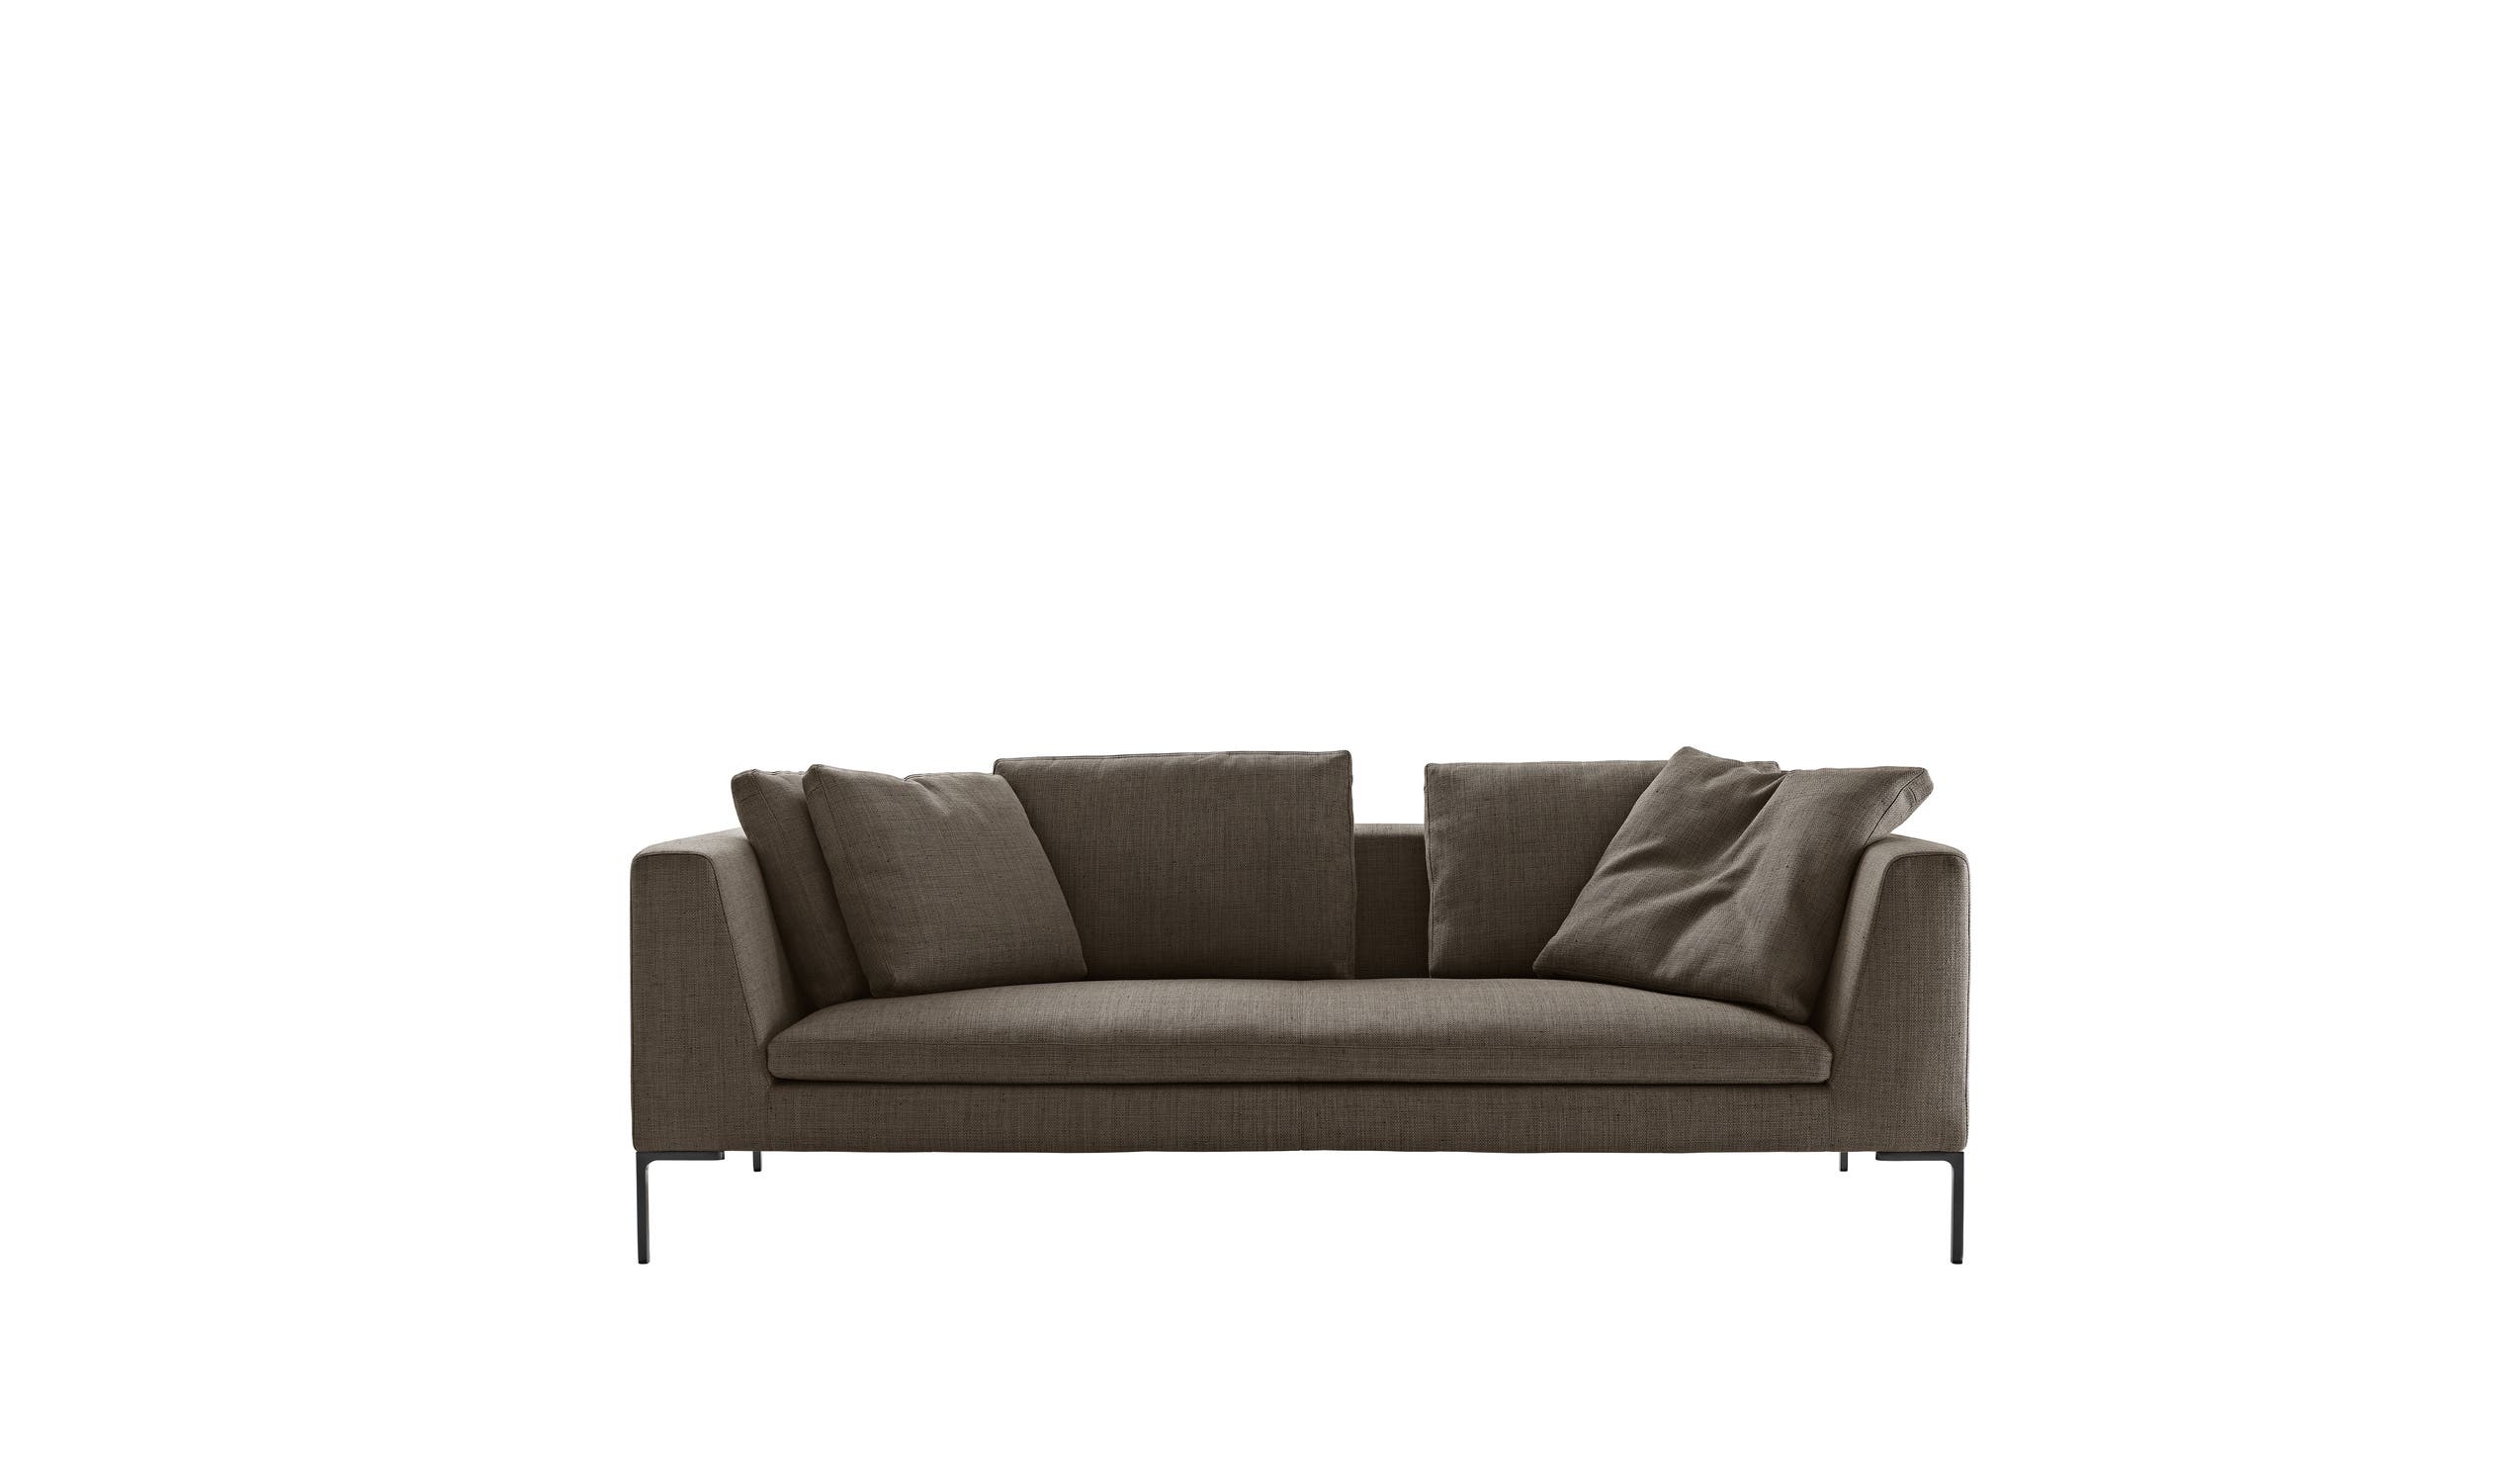 Modern designer italian sofas - Charles Sofas 4